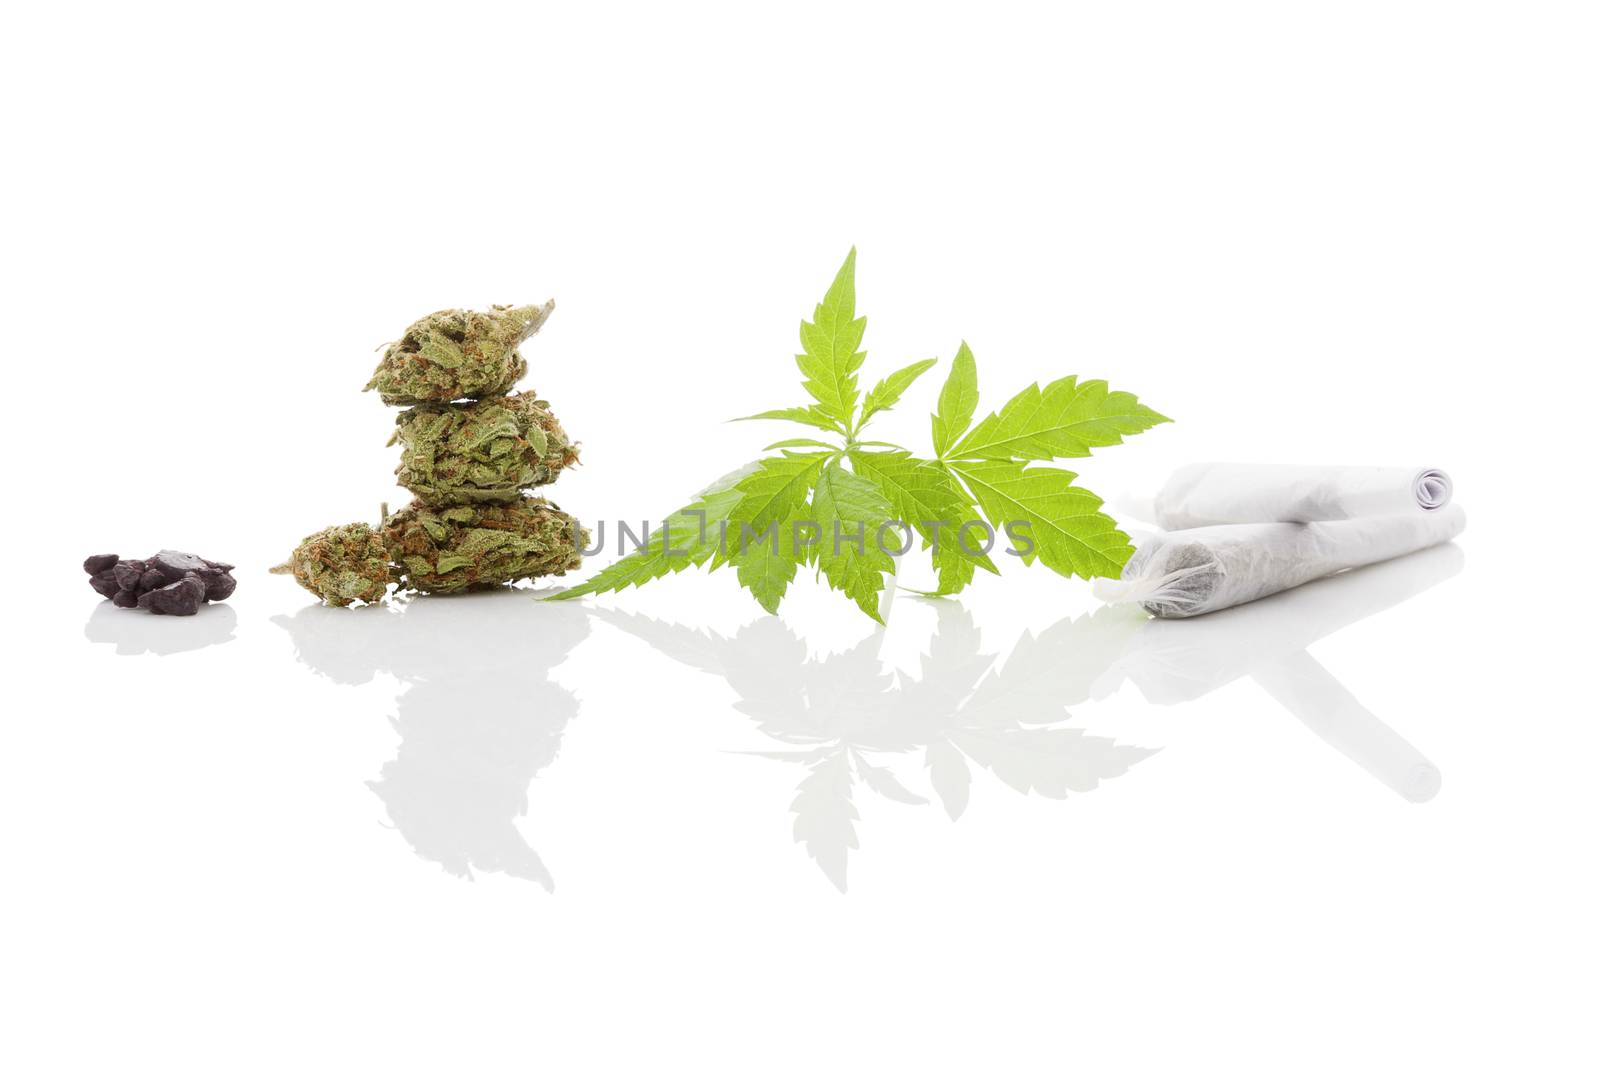 Marijuana cigarette joint, bud, hashish and foliage isolated on white background. Medical marijuana, alternative medicine. 